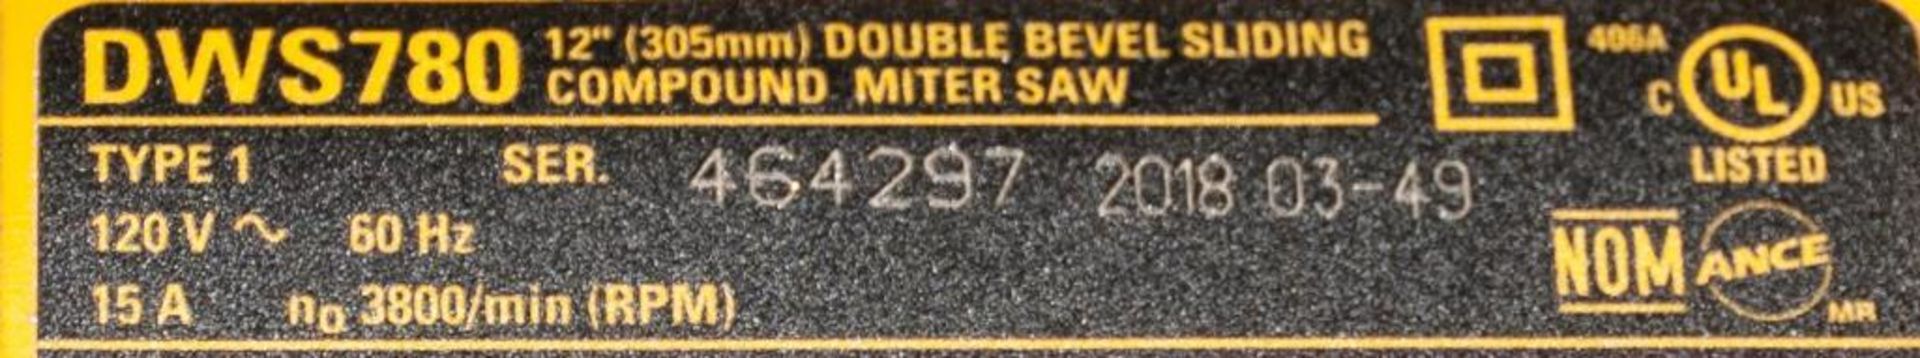 DeWalt Model DWS780 12" Double Bevel Sliding Compound Miter Saw s/n 4641297, 120v, On DeWalt Model D - Image 3 of 4